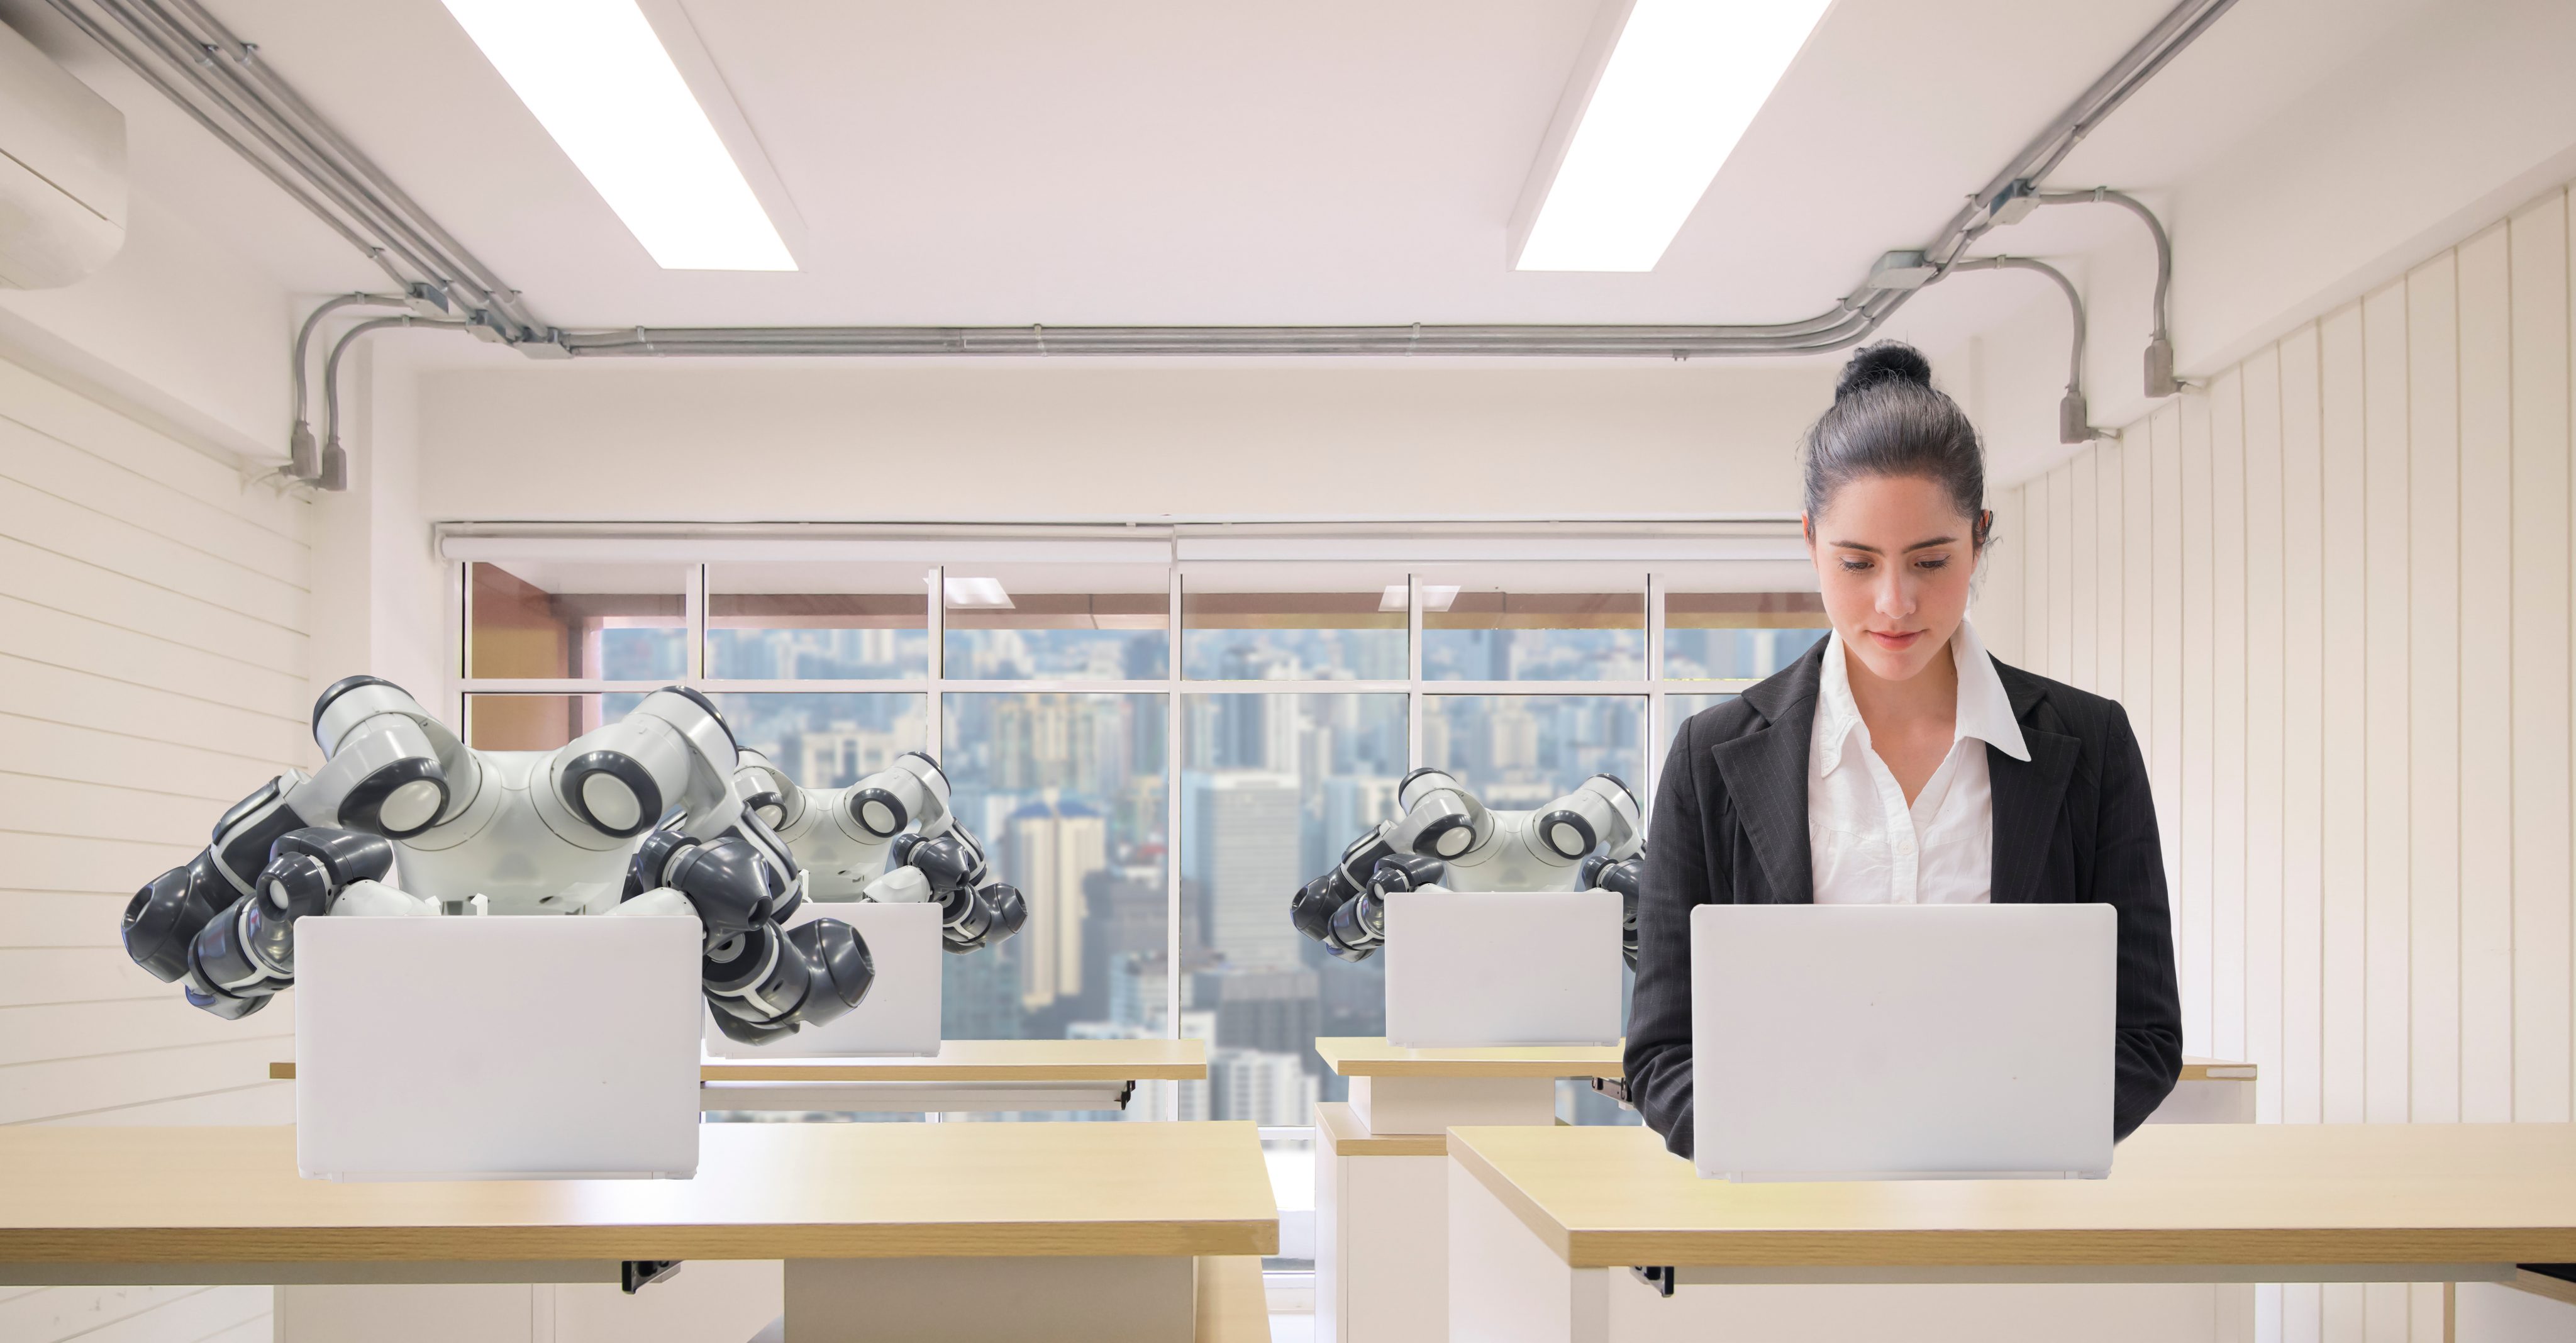 No La Inteligencia Artificial No Te Va A Quitar El Trabajo Los Mitos Sobre La IA I